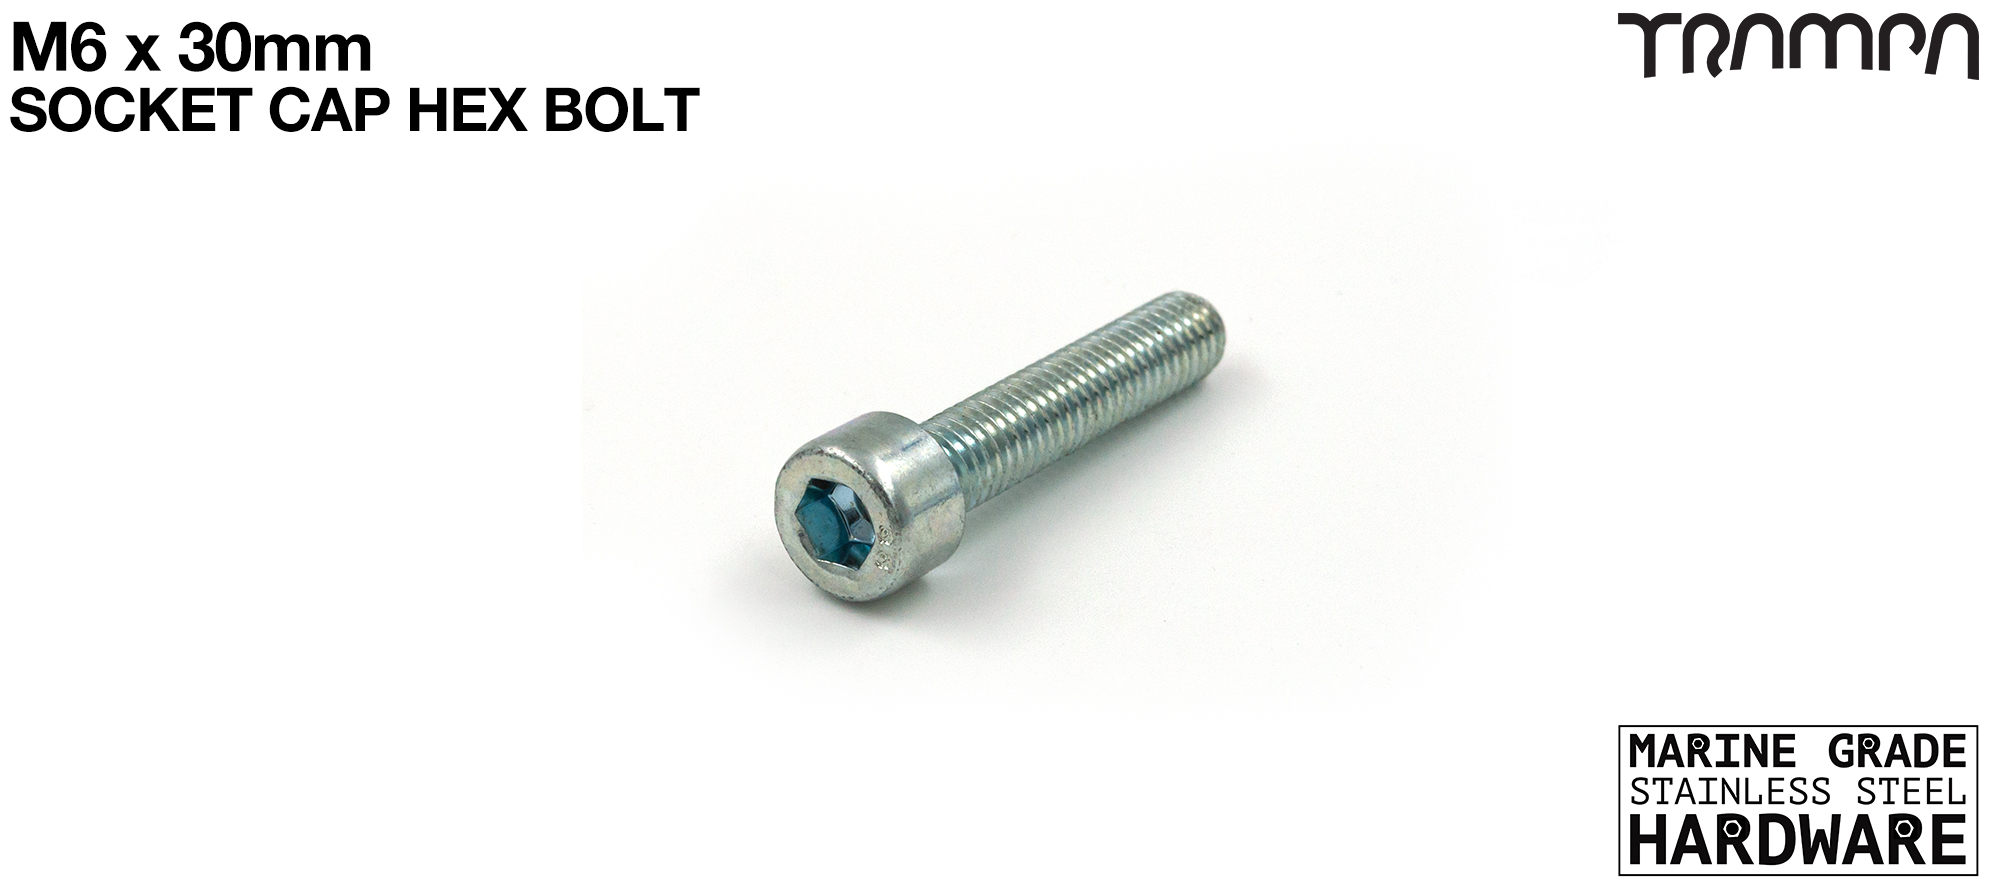 M8 x 80mm Socket Capped Allen-Key Bolt for primo hub - Marine Grade Stainless steel 